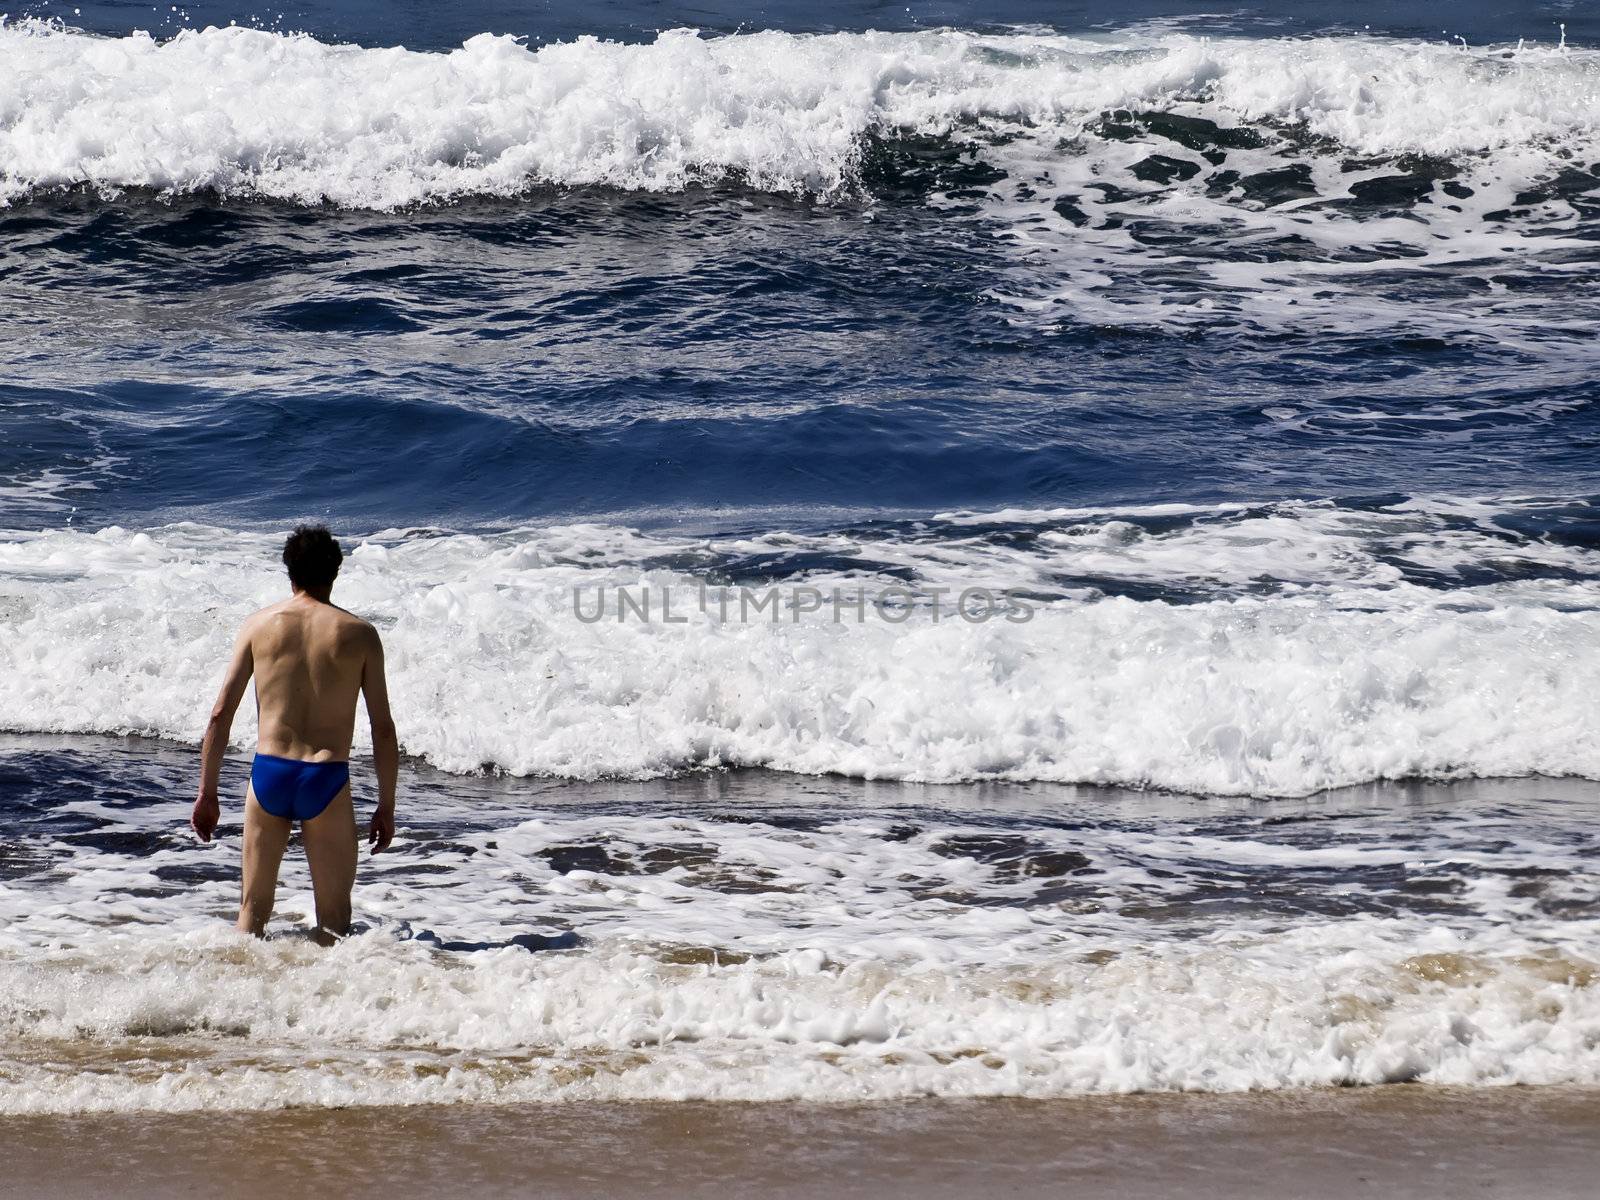 Man on the beach in Malta in the Mediterranean